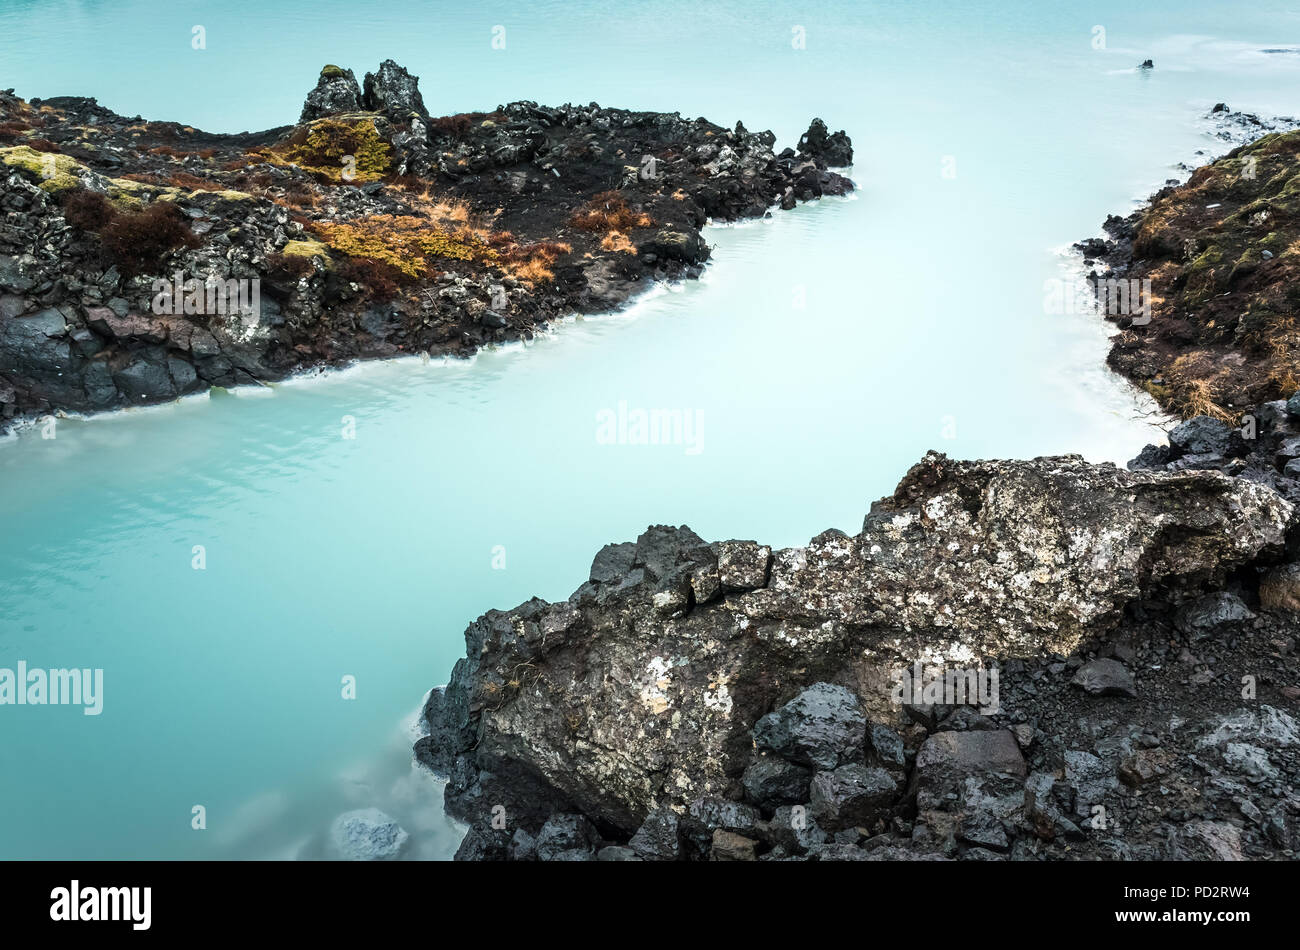 L'Islande, Blue lagoon geothermal spa, naturel, l'une des attractions touristiques les plus visitées en Islande Banque D'Images